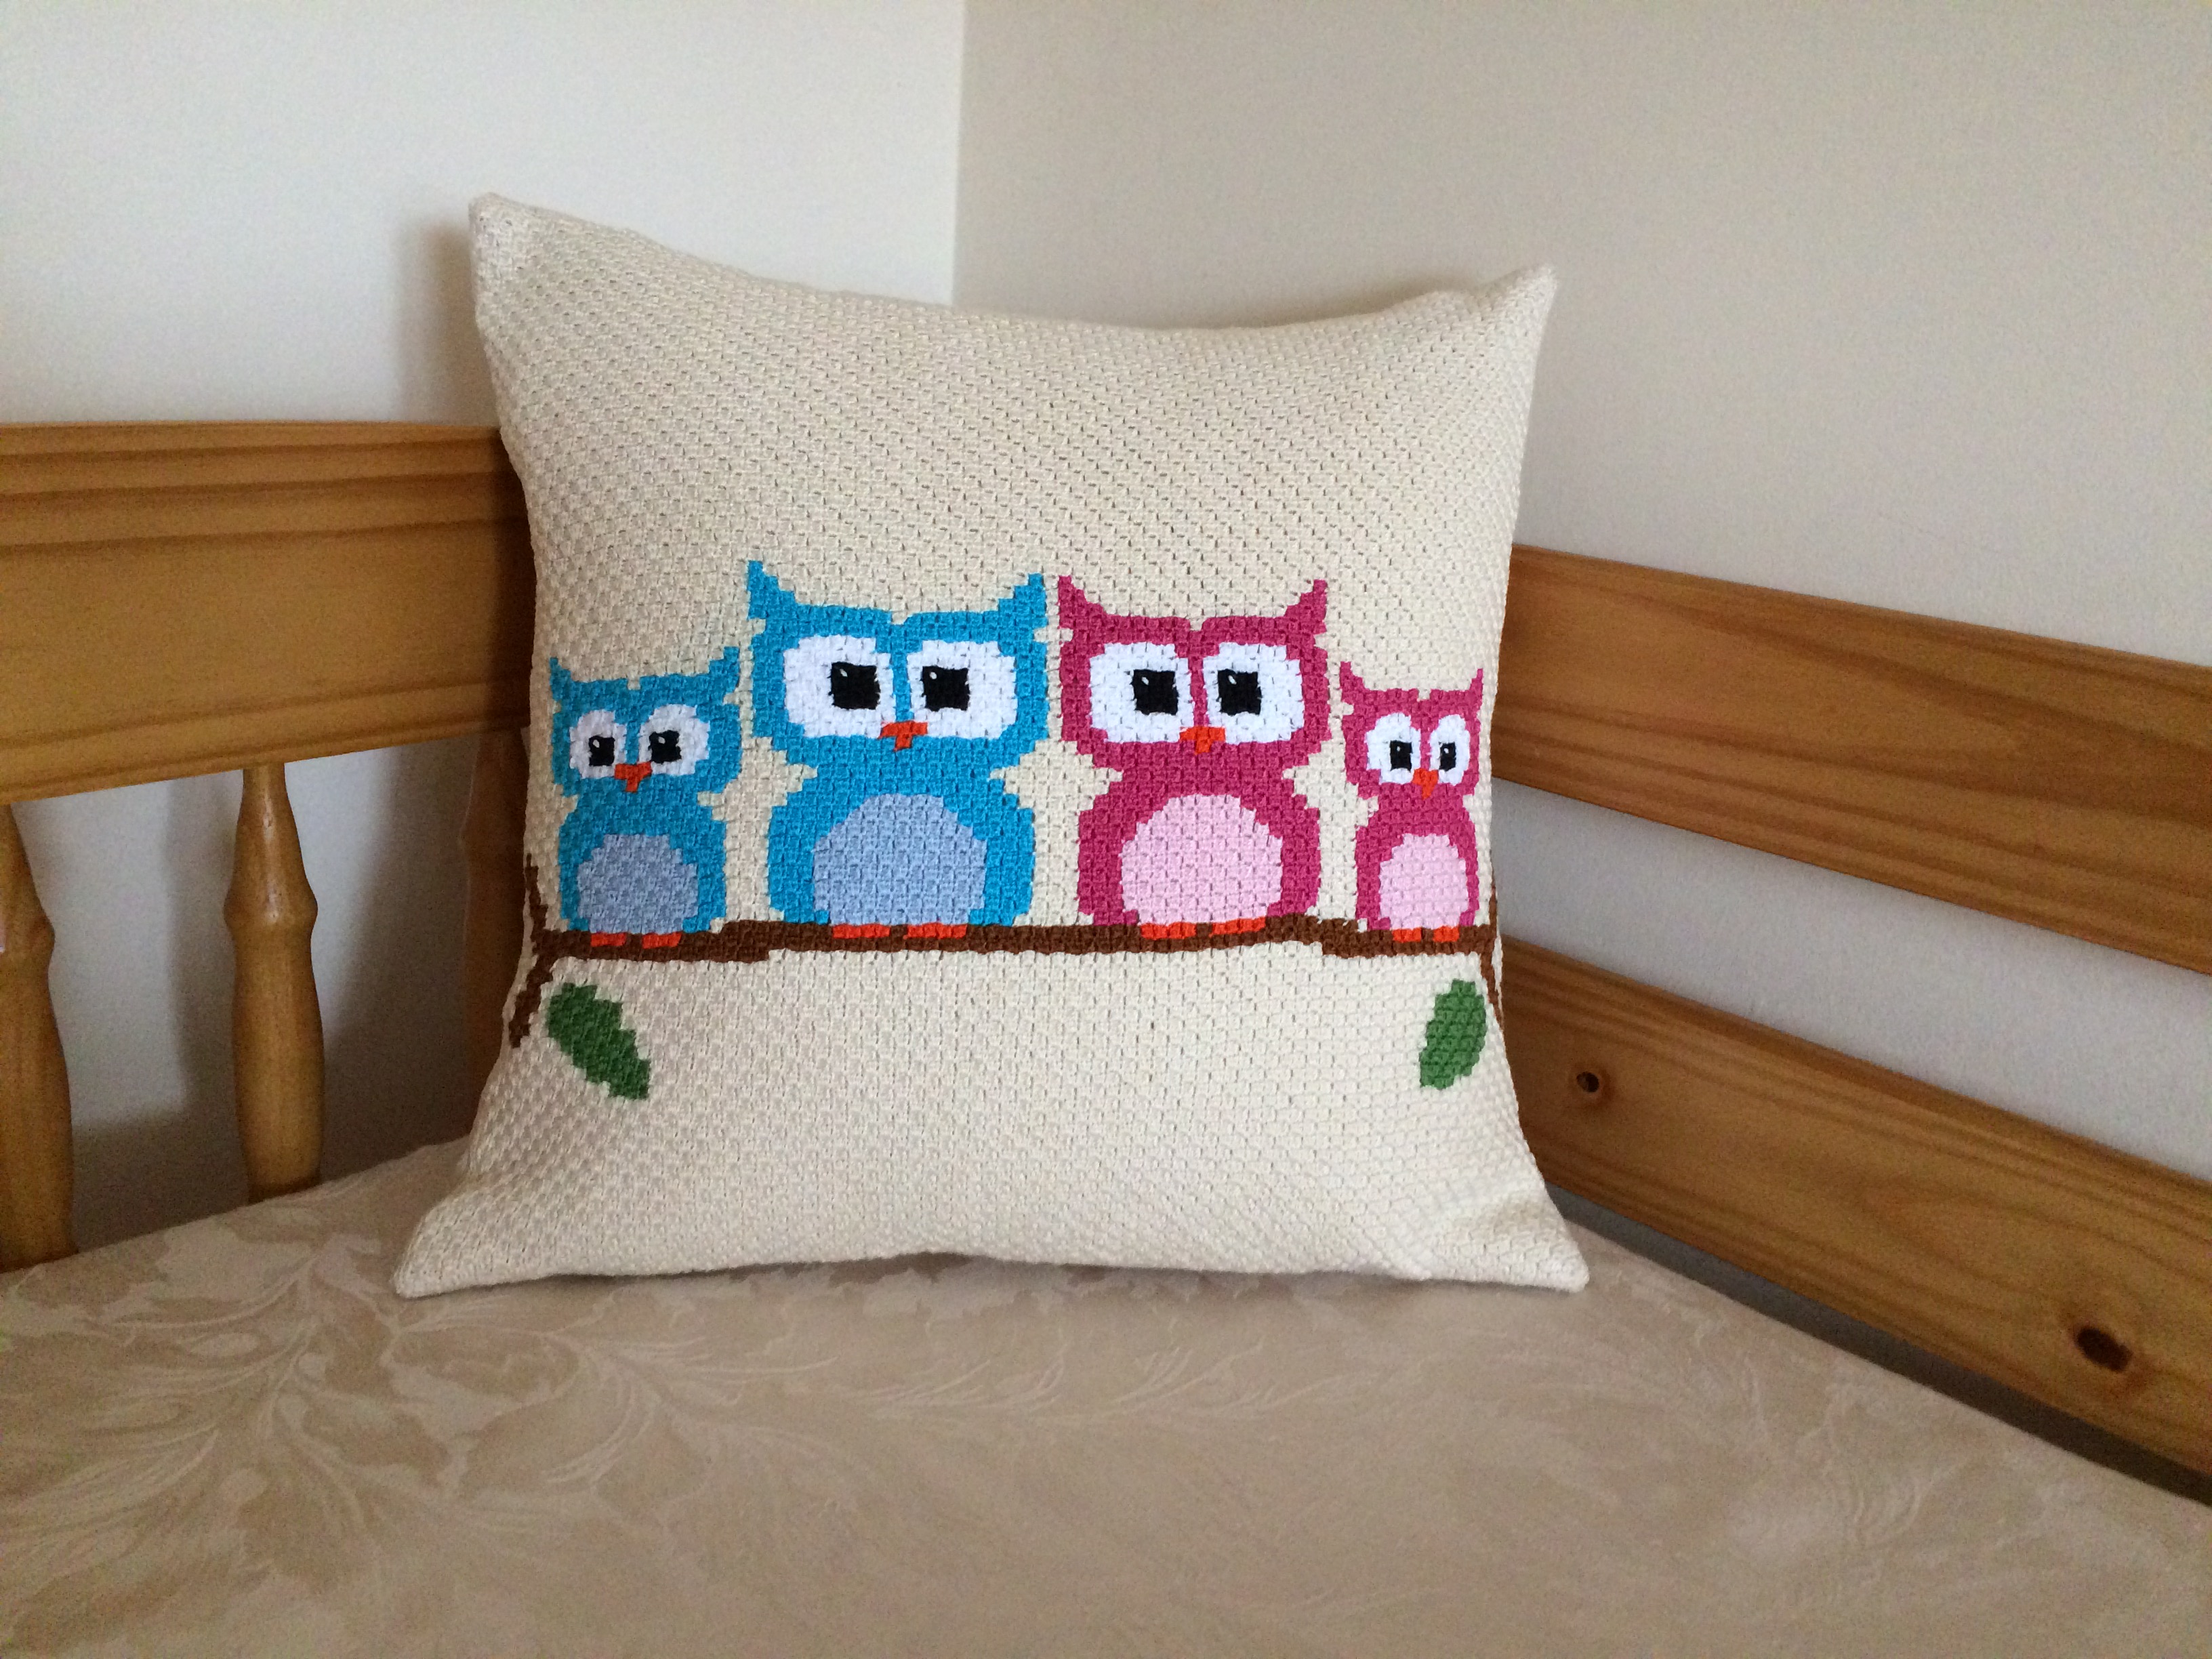 Crochet Owl Cushion Cover